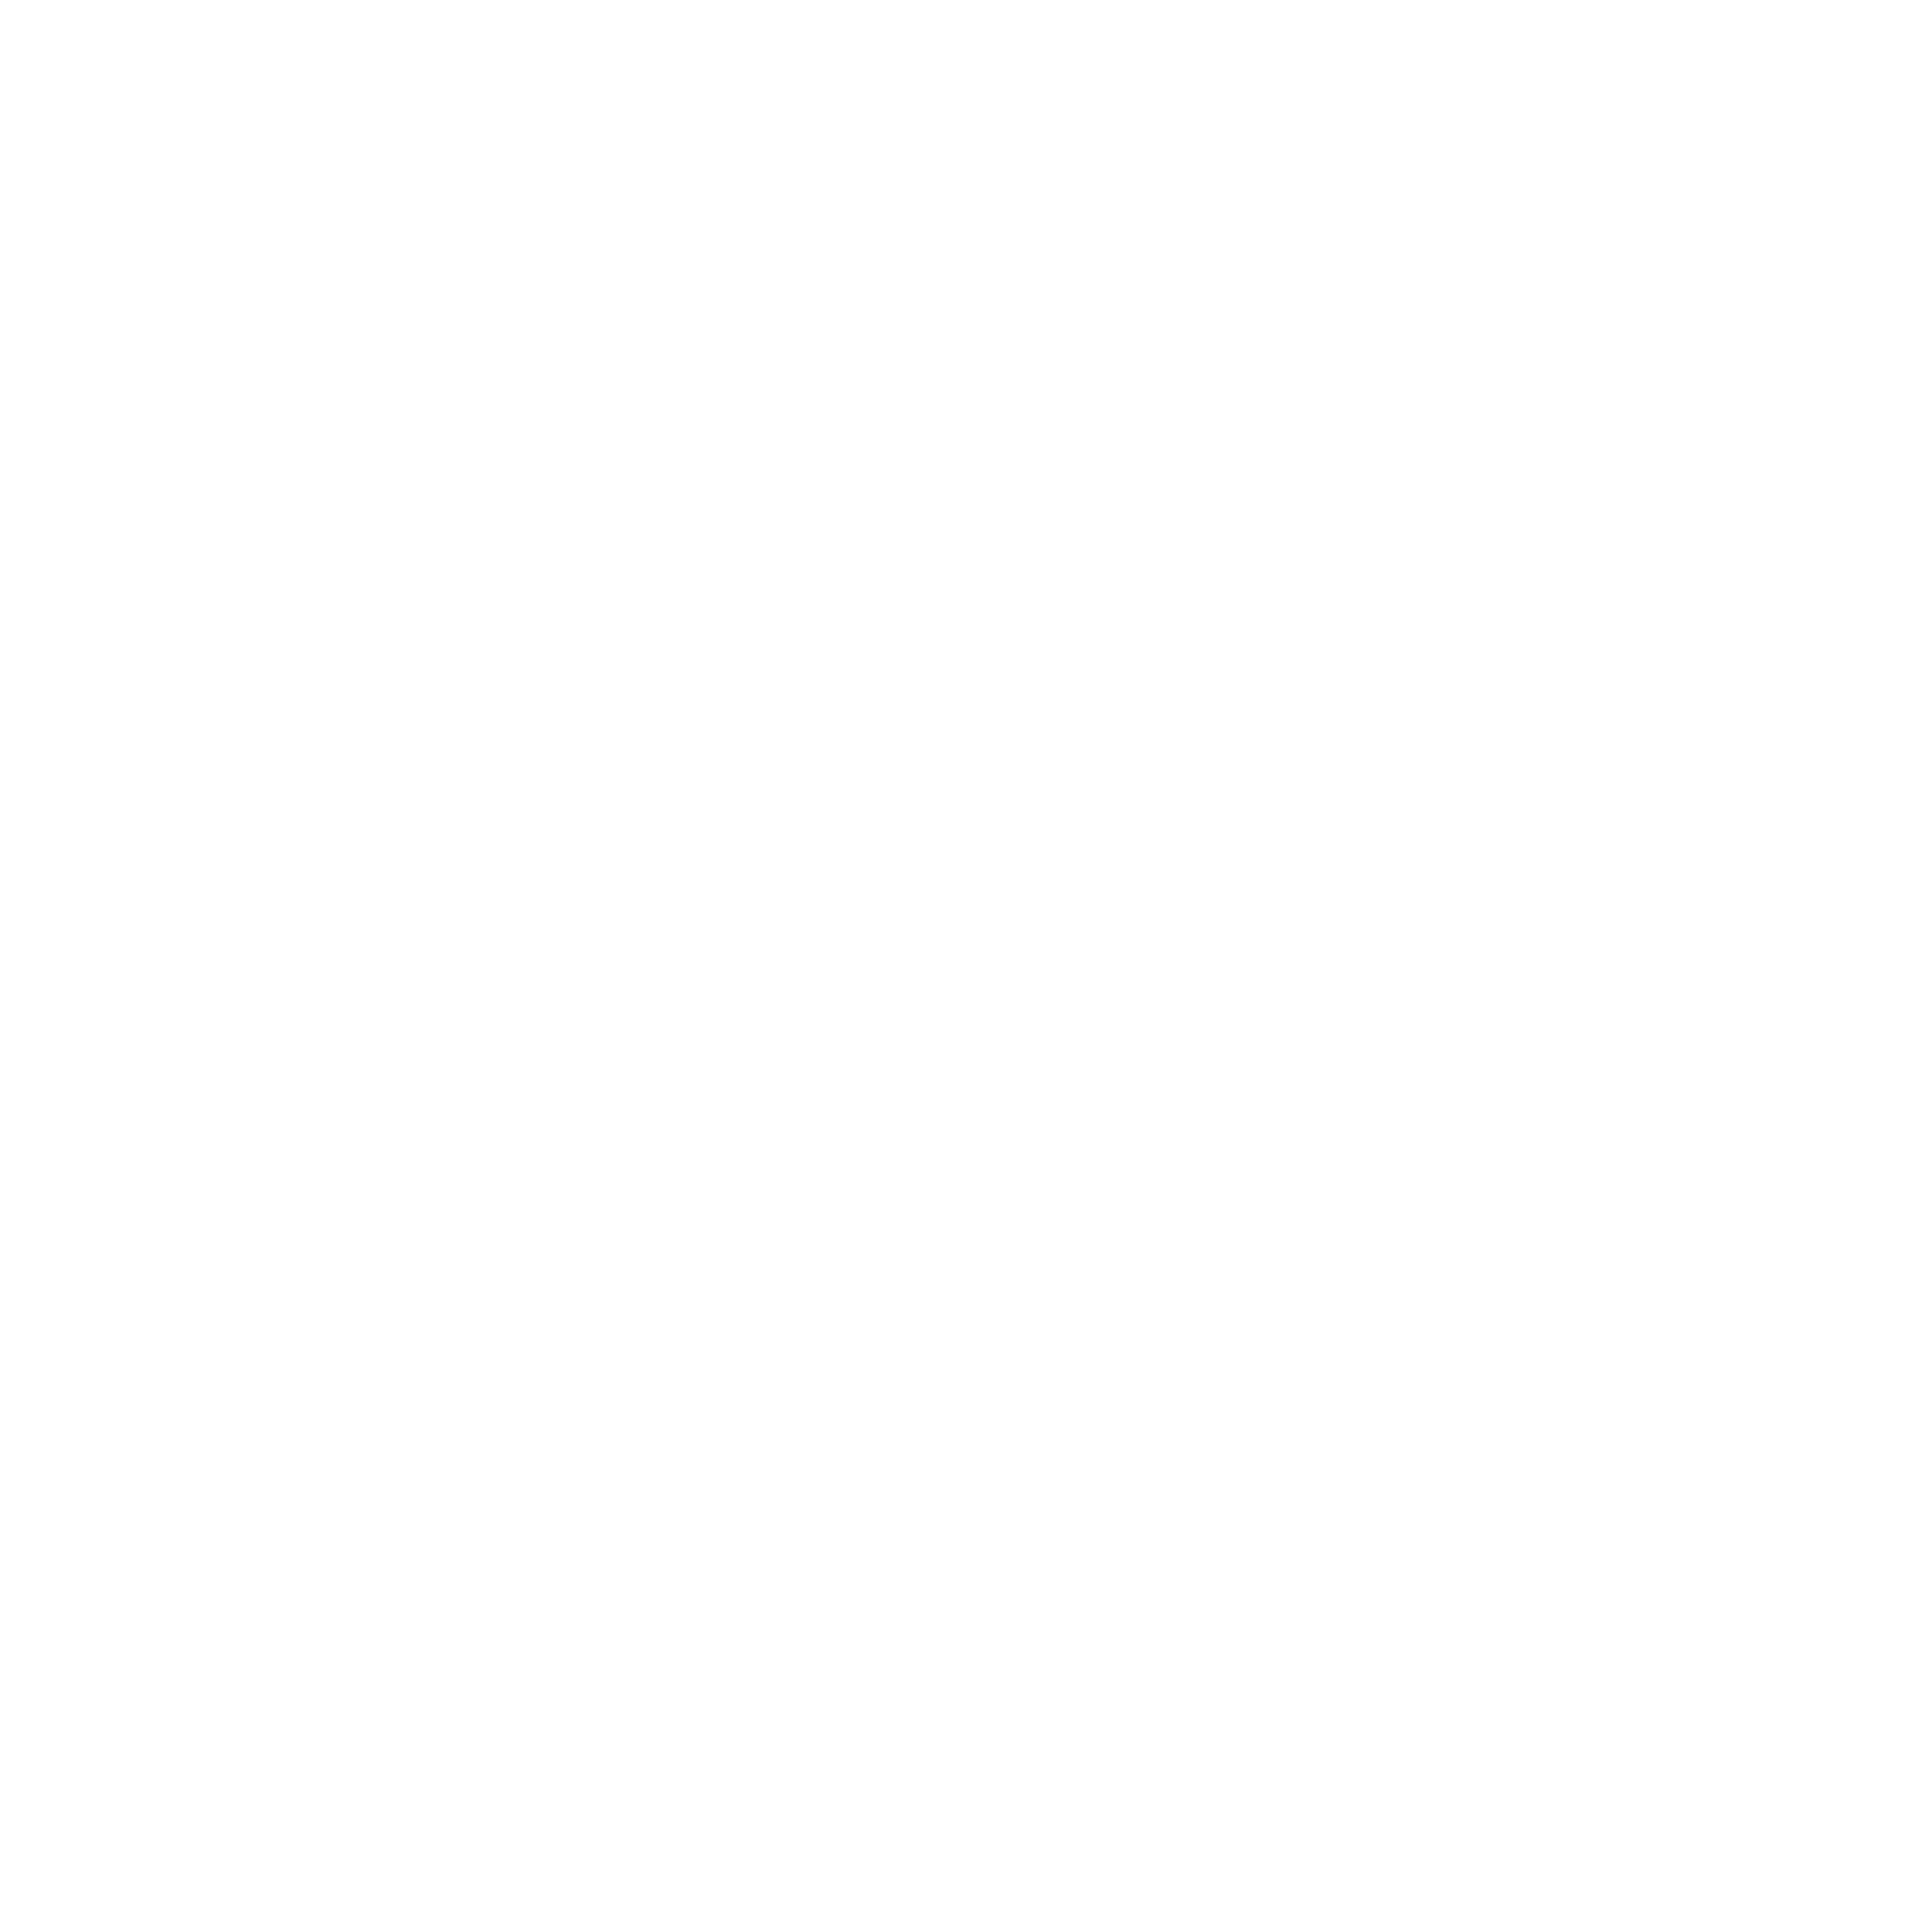 Pinerium